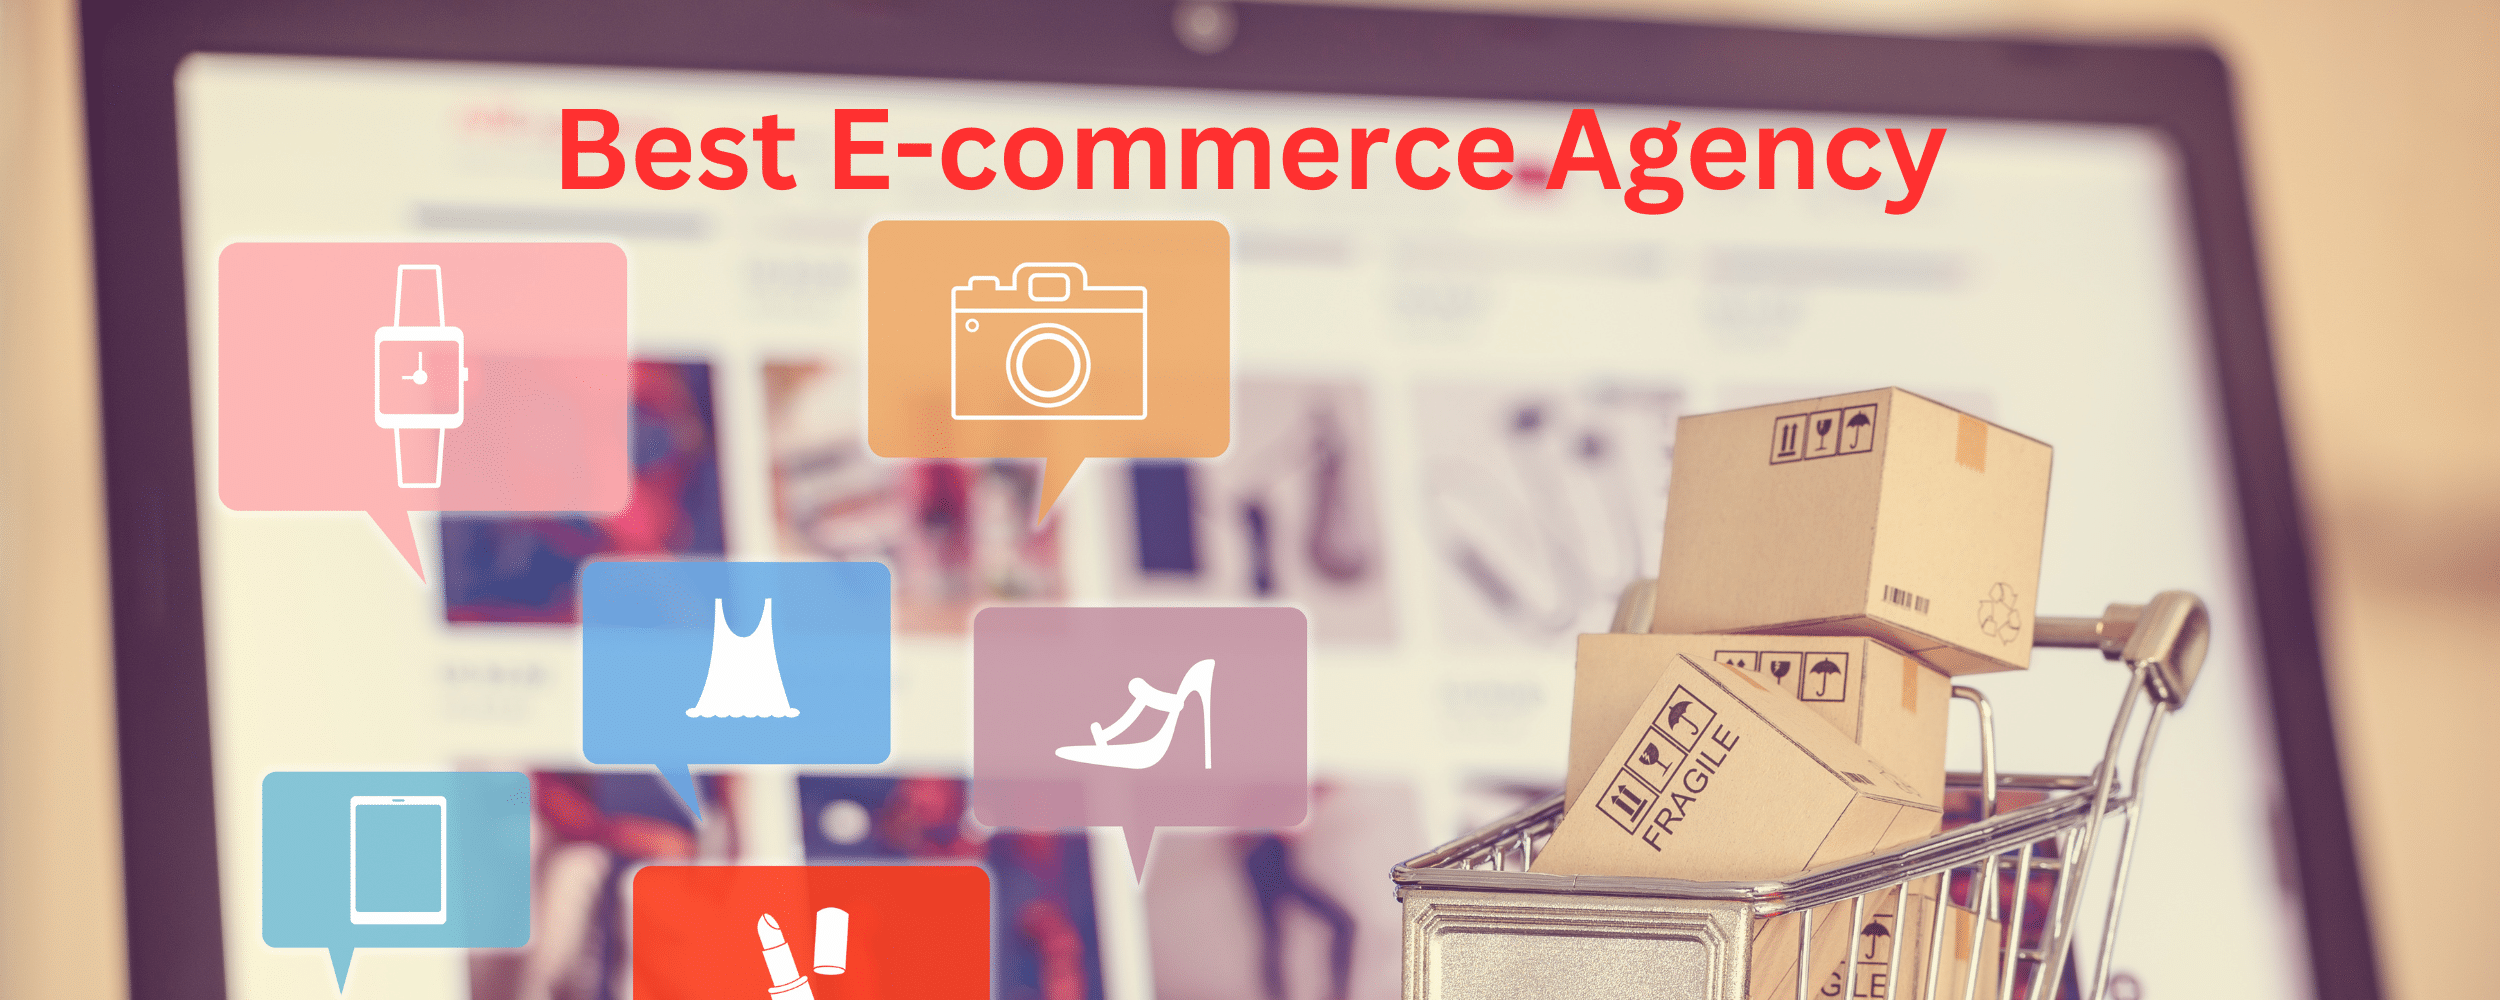 Best E-commerce Agency